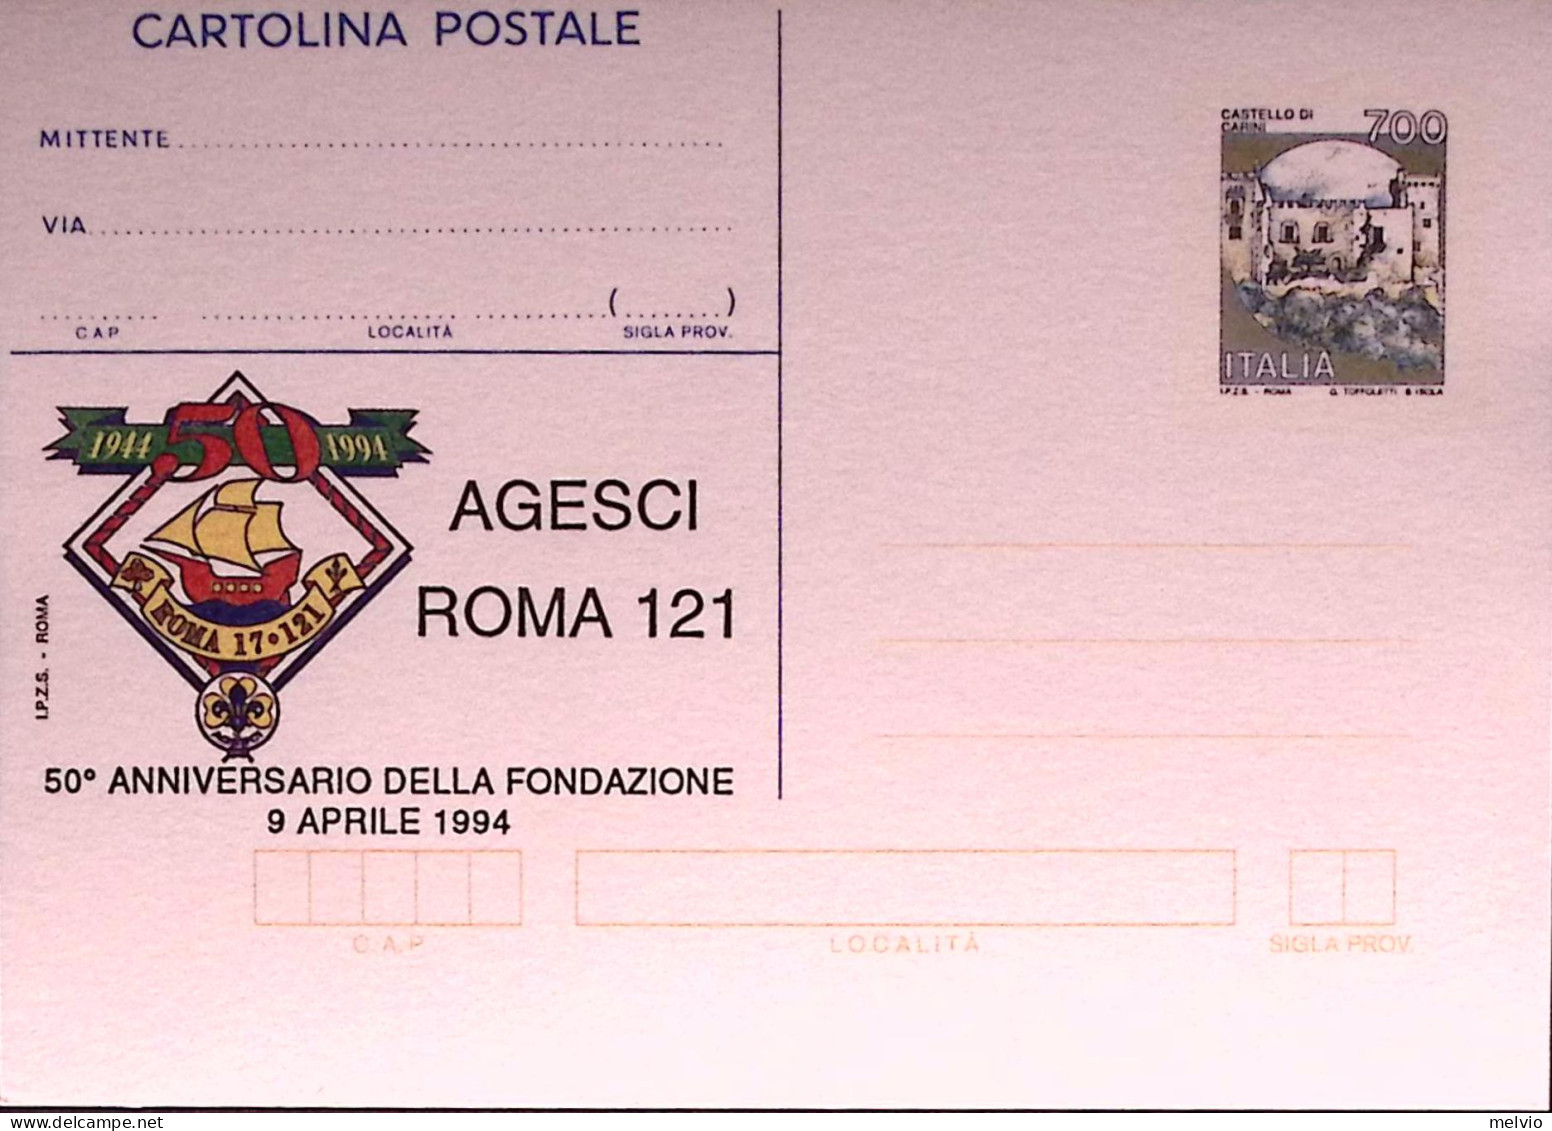 1994-AGESCI ROMA 121 Cartolina Postale IPZS Lire 700 Nuova - Entiers Postaux